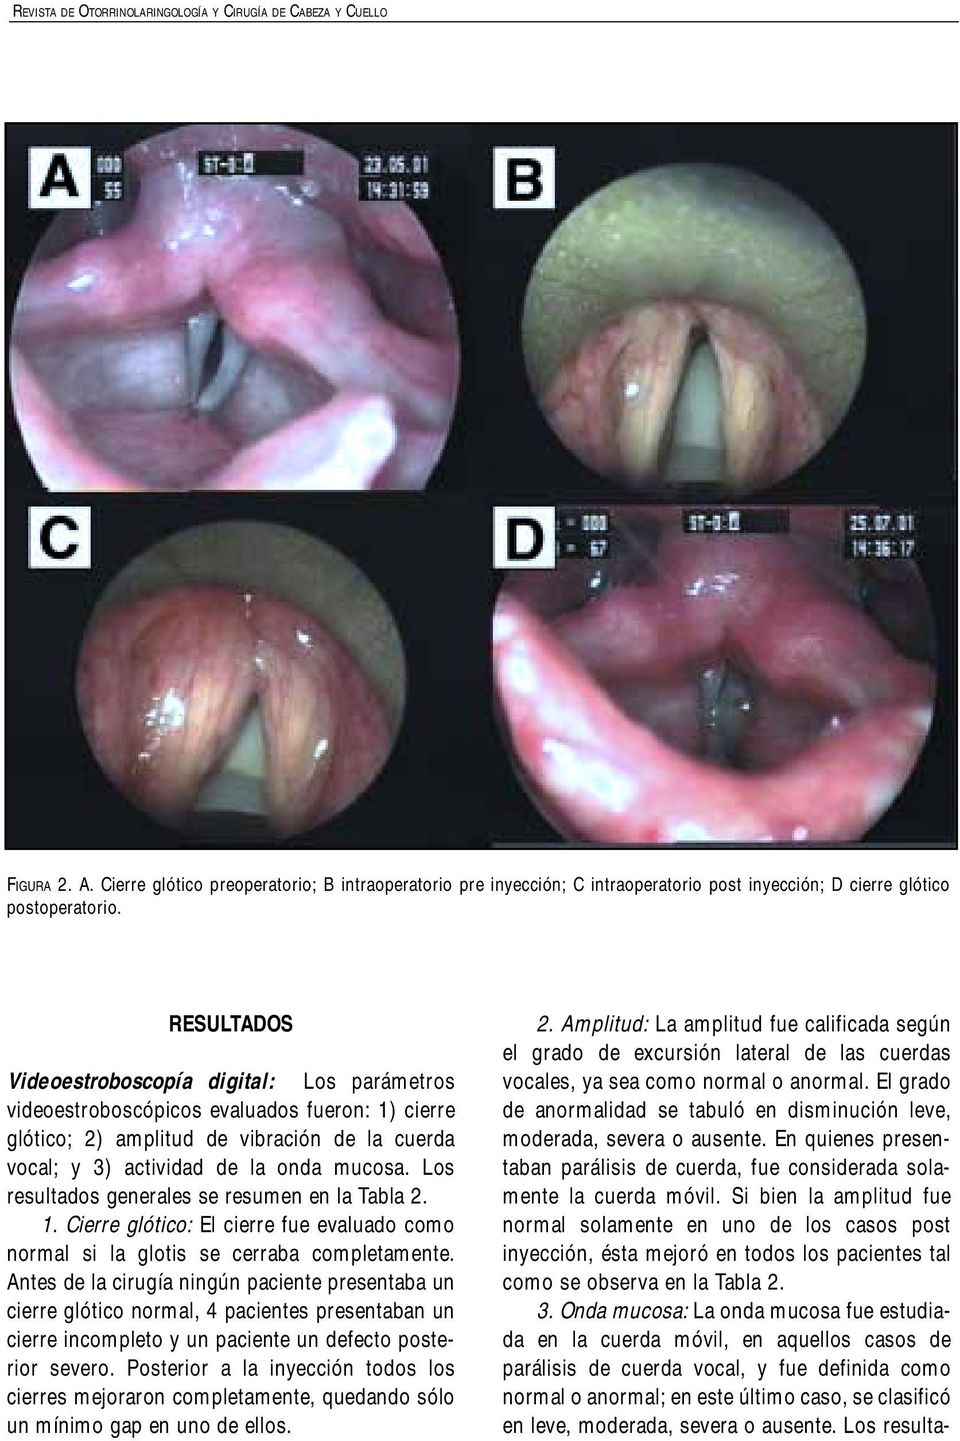 RESULTADOS Videoestroboscopía digital: Los parámetros videoestroboscópicos evaluados fueron: 1) cierre glótico; 2) amplitud de vibración de la cuerda vocal; y 3) actividad de la onda mucosa.